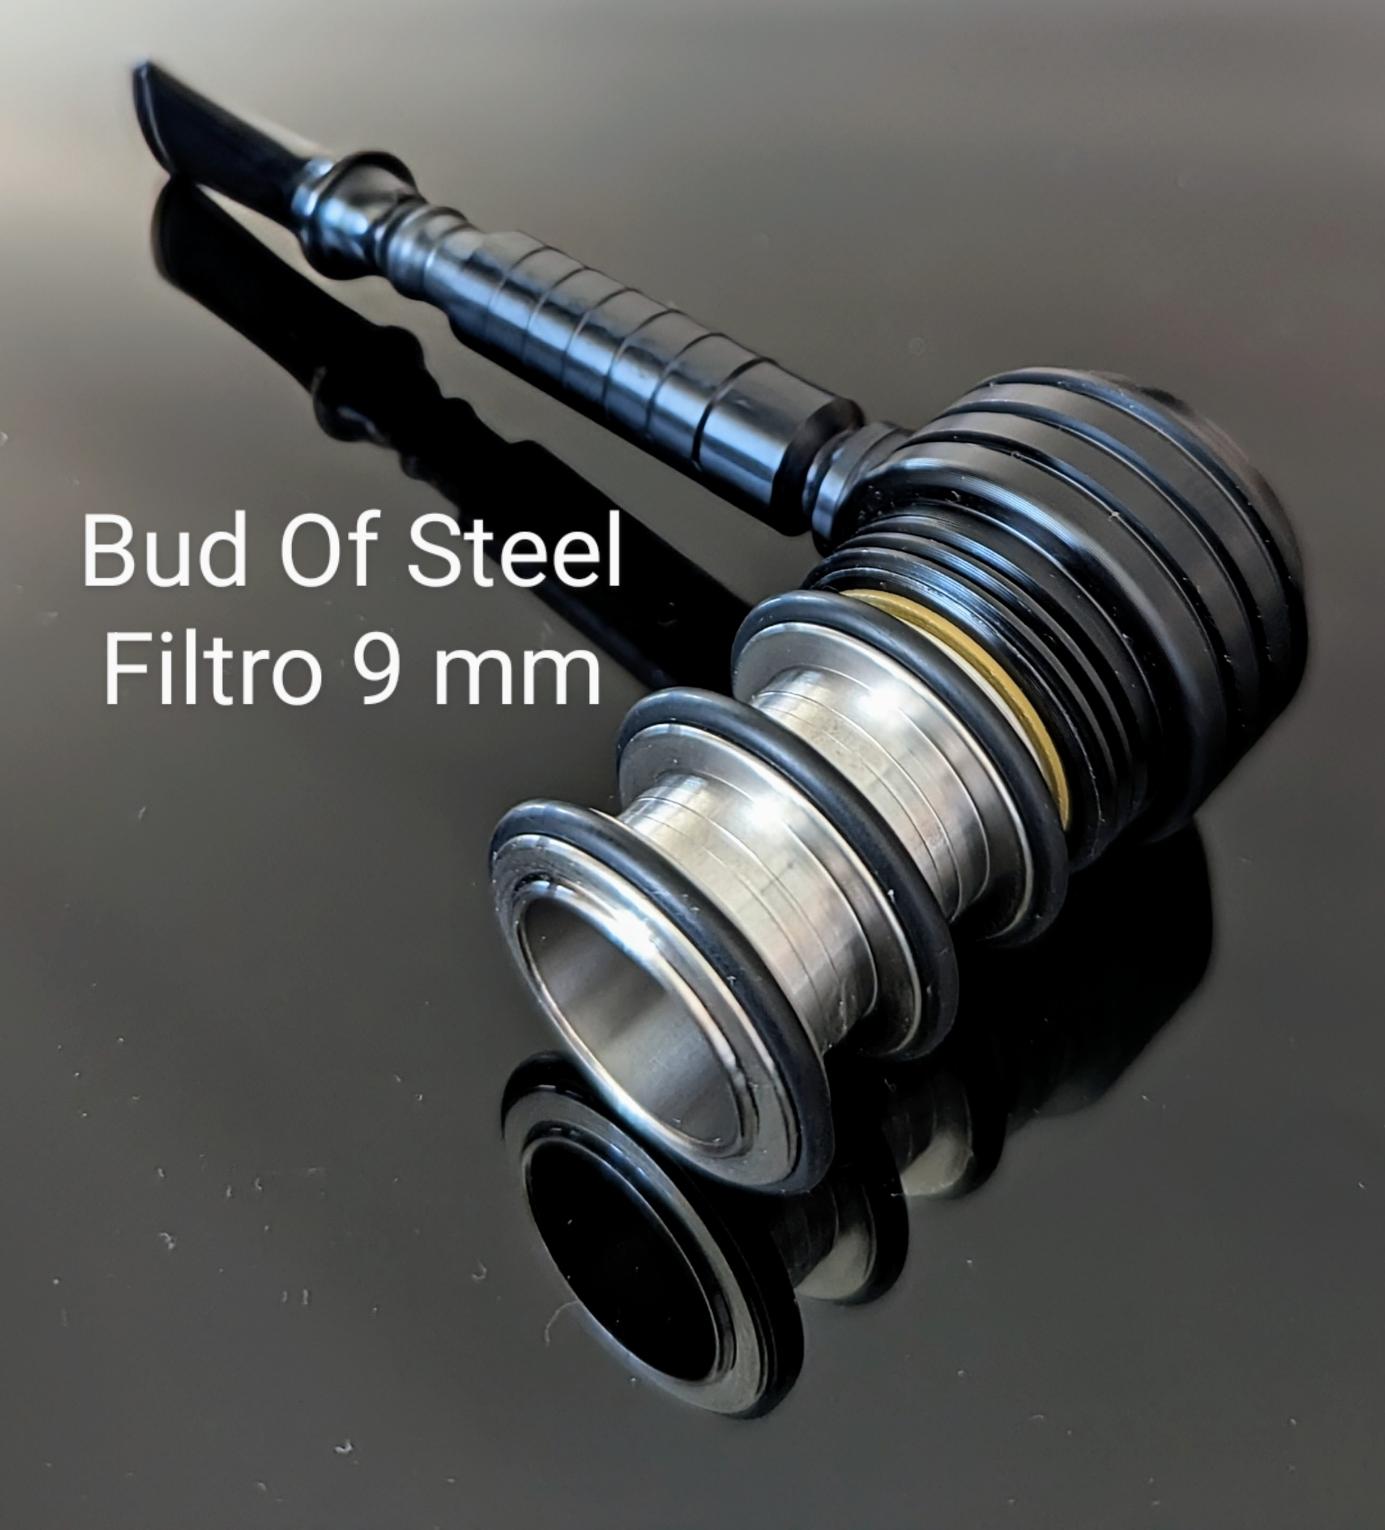 Job Pipe Bud Of Steel Gruppo 2 Filtro 9 mm e Ultra Short Brucianaso no filtro